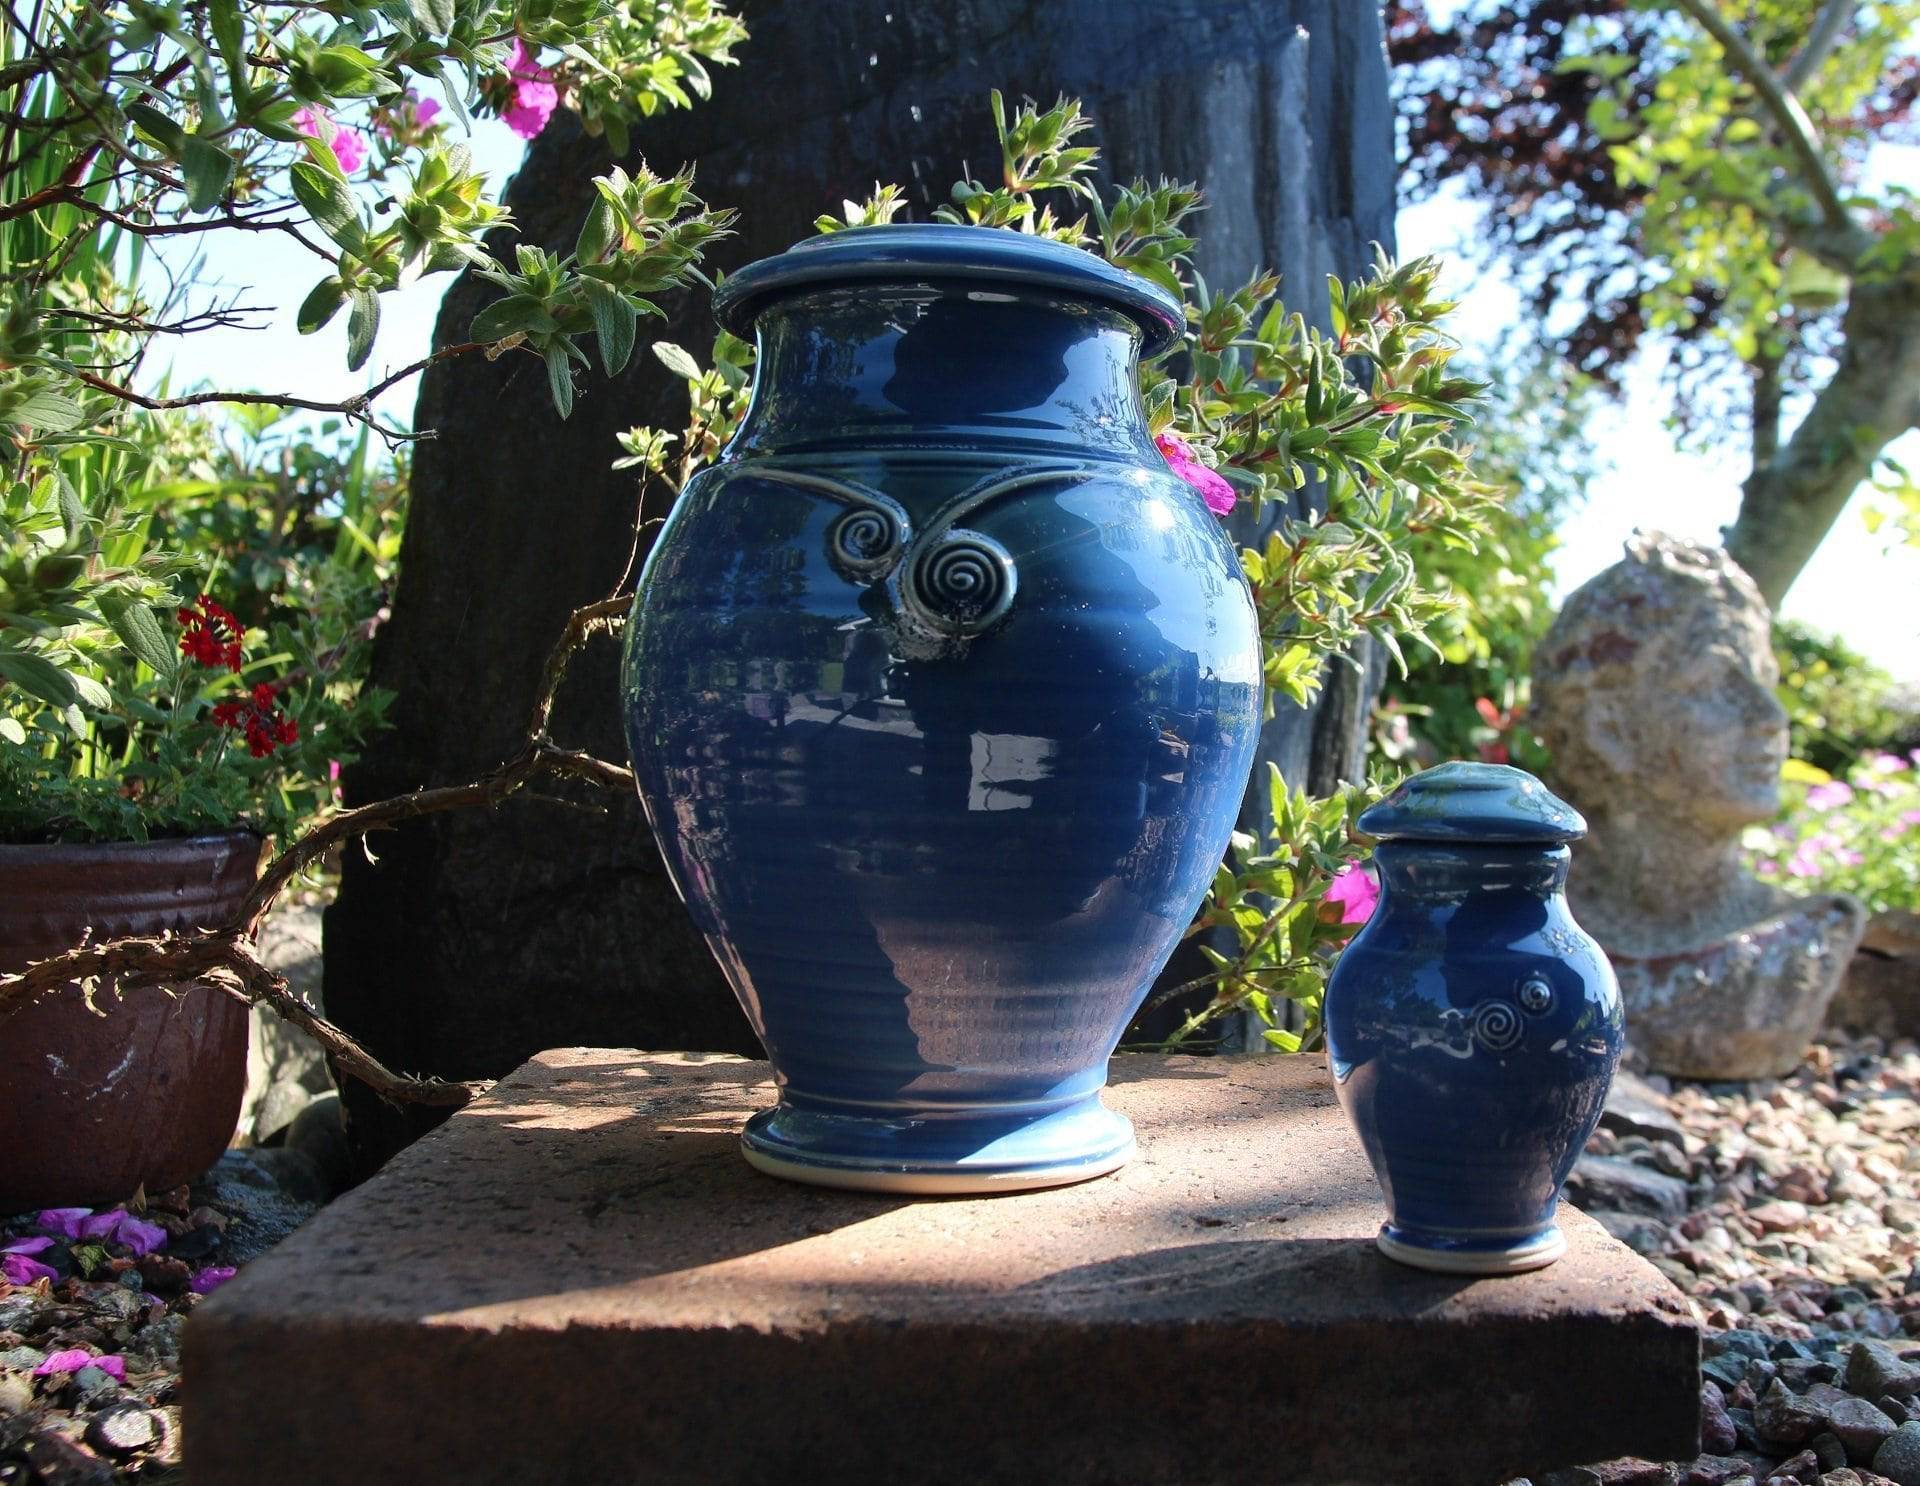 Torc Celtic Cremation Urn & Keepsake - Seasalt Blue